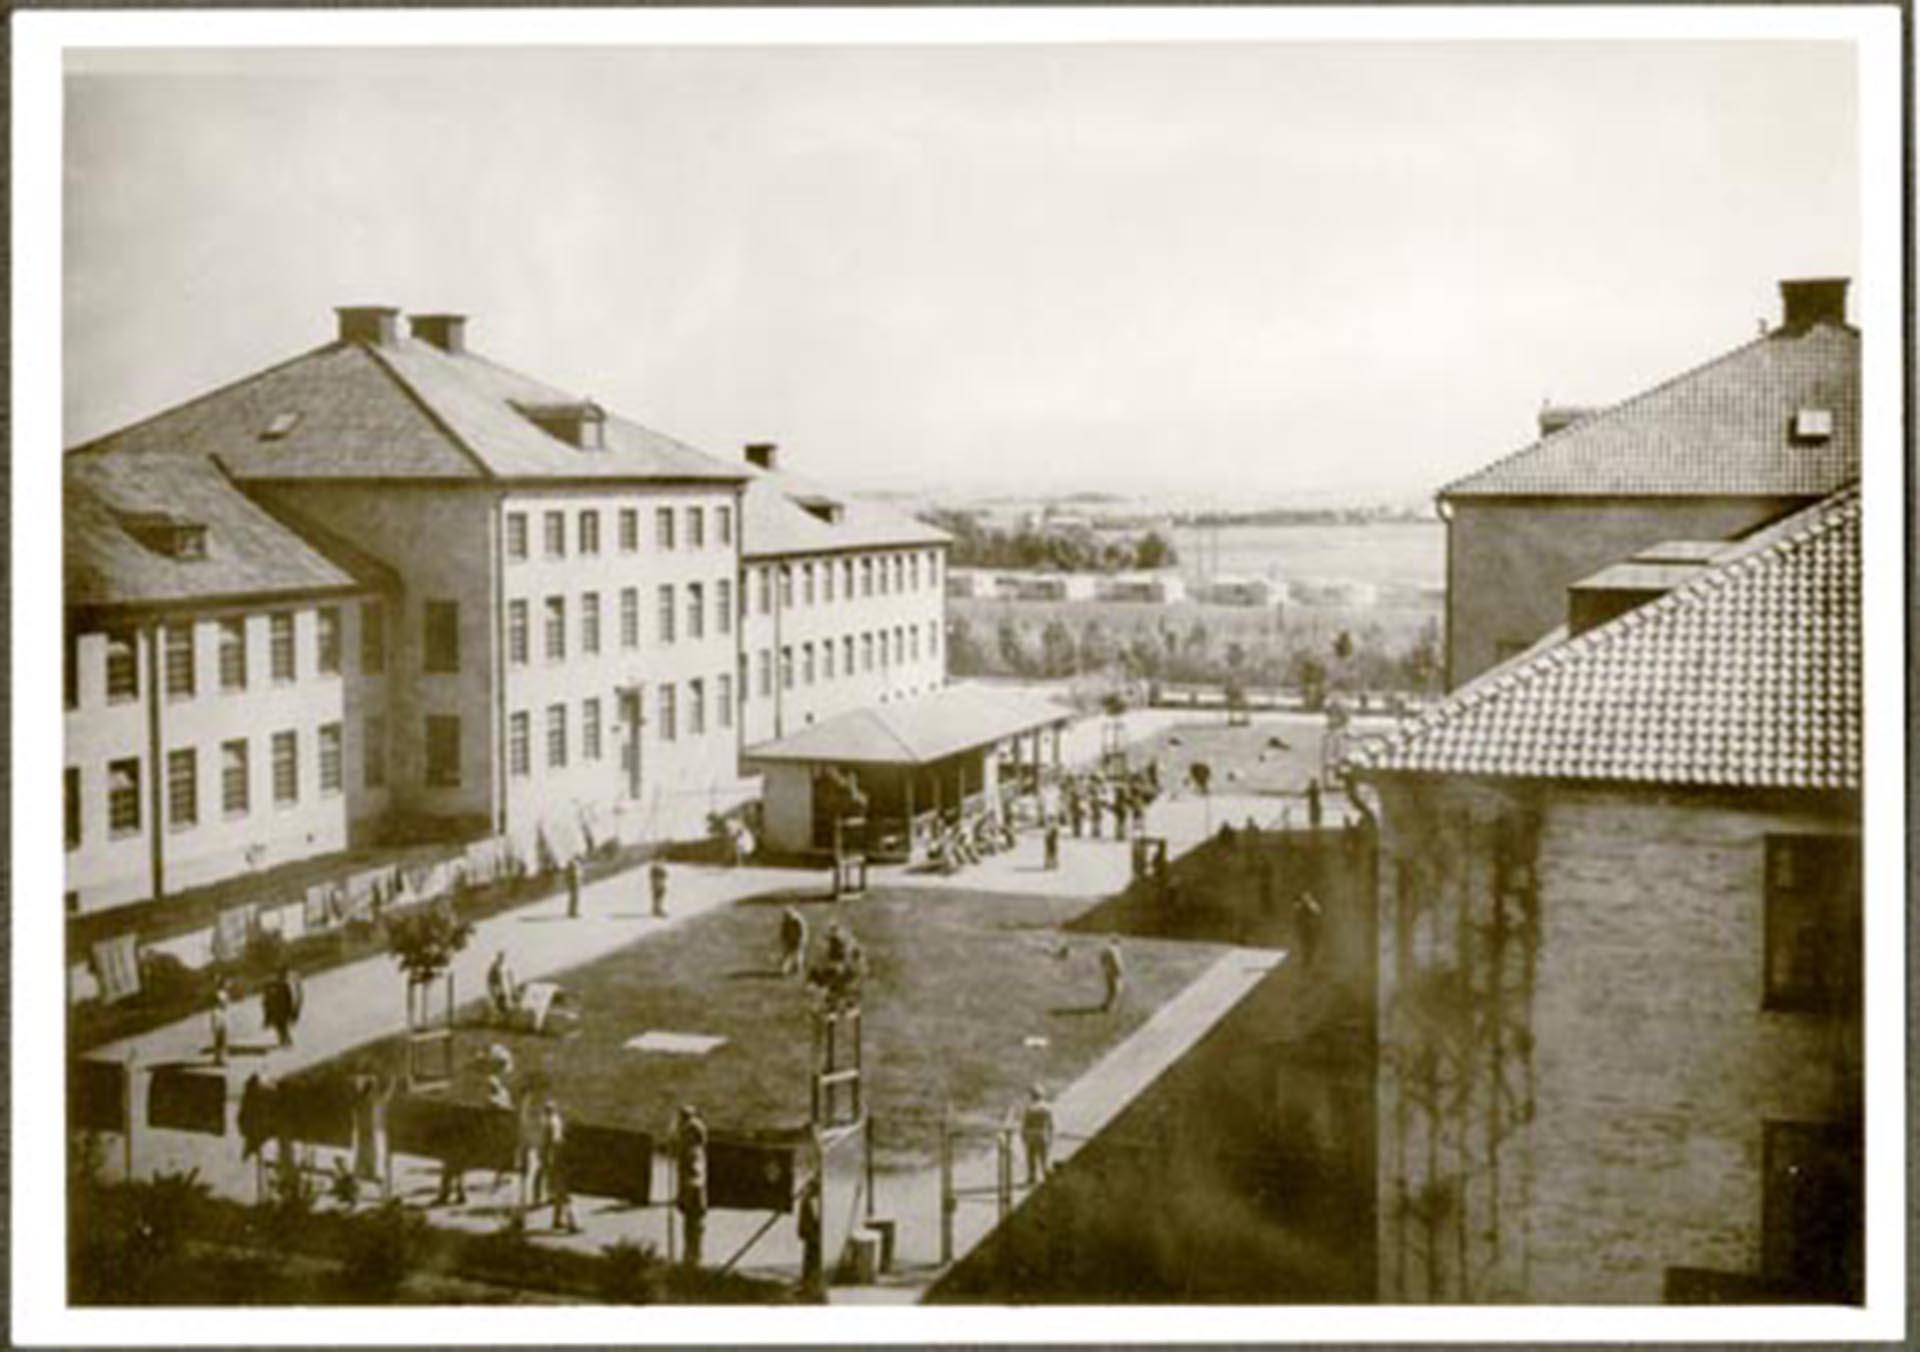 Rastgården på Vipeholms sjukhus i Lund, 1953. På fotot syns delar av byggnader och människor på rastgården.